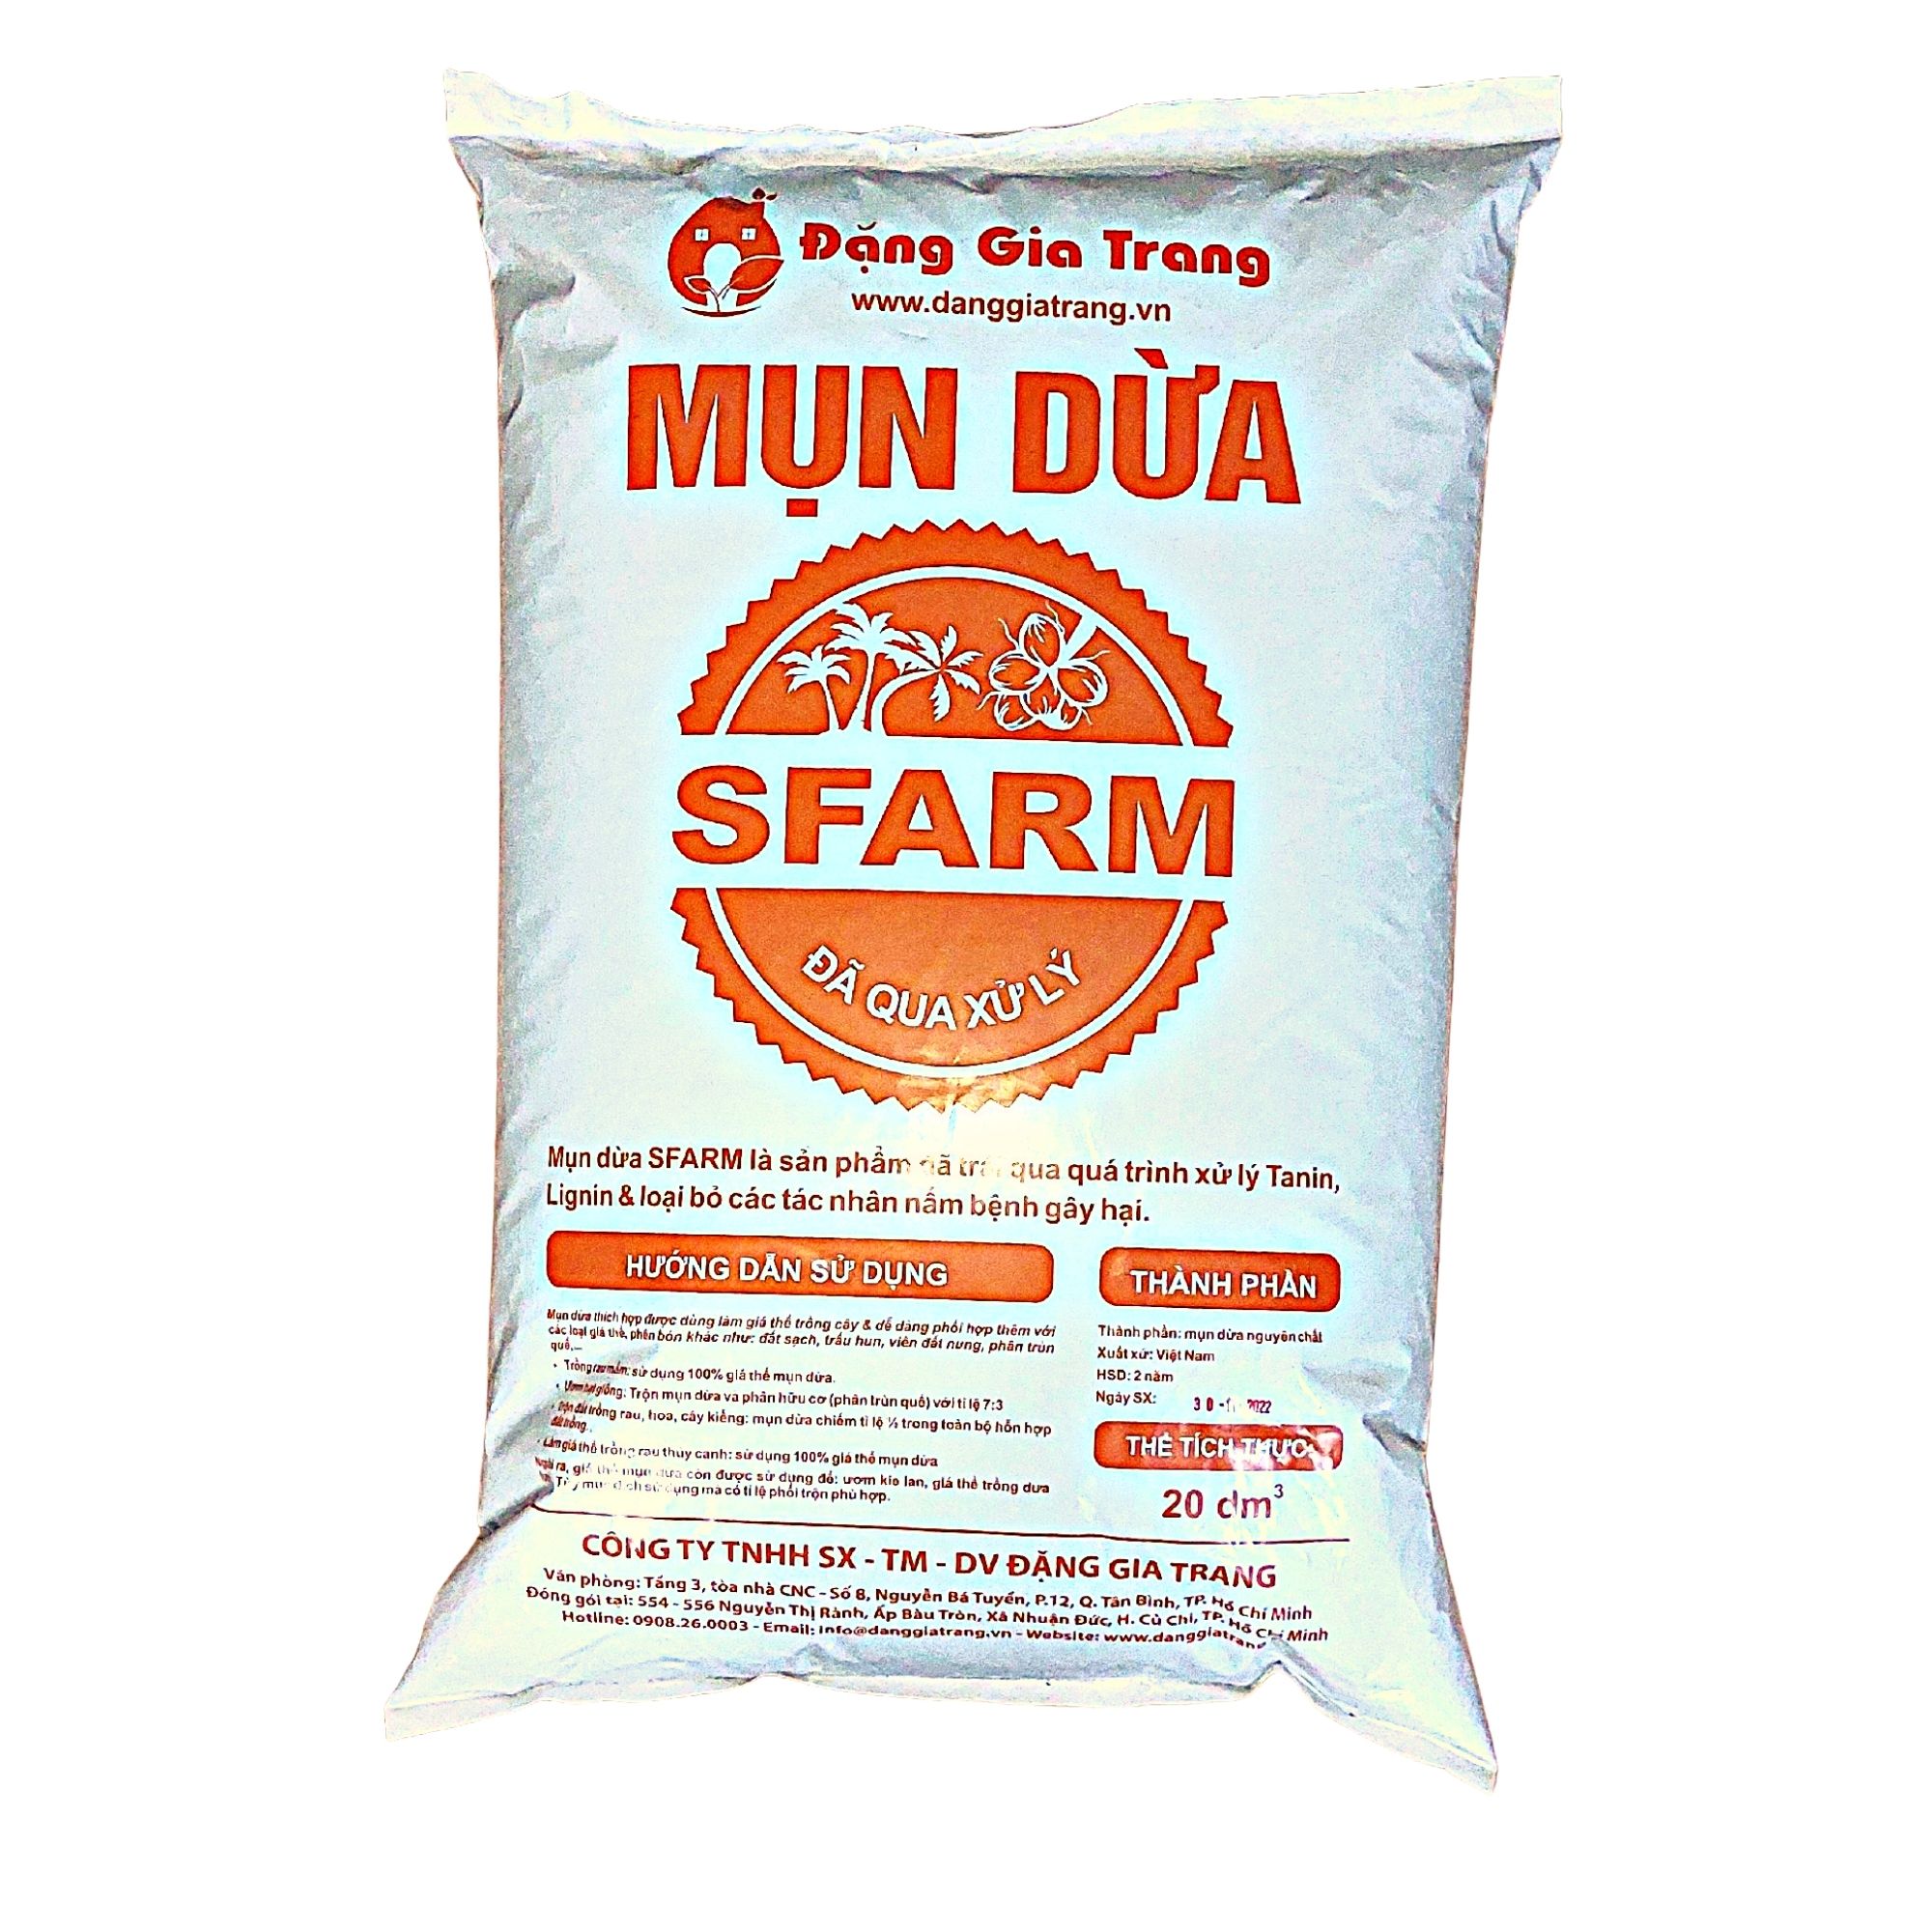 Mụn dừa đã qua xử lý SFARM  túi to 20DM3 - Sử dụng ngay, Cải tạo đất, Bổ sung dưỡng chất cho cây trồng- Cây Xanh Store